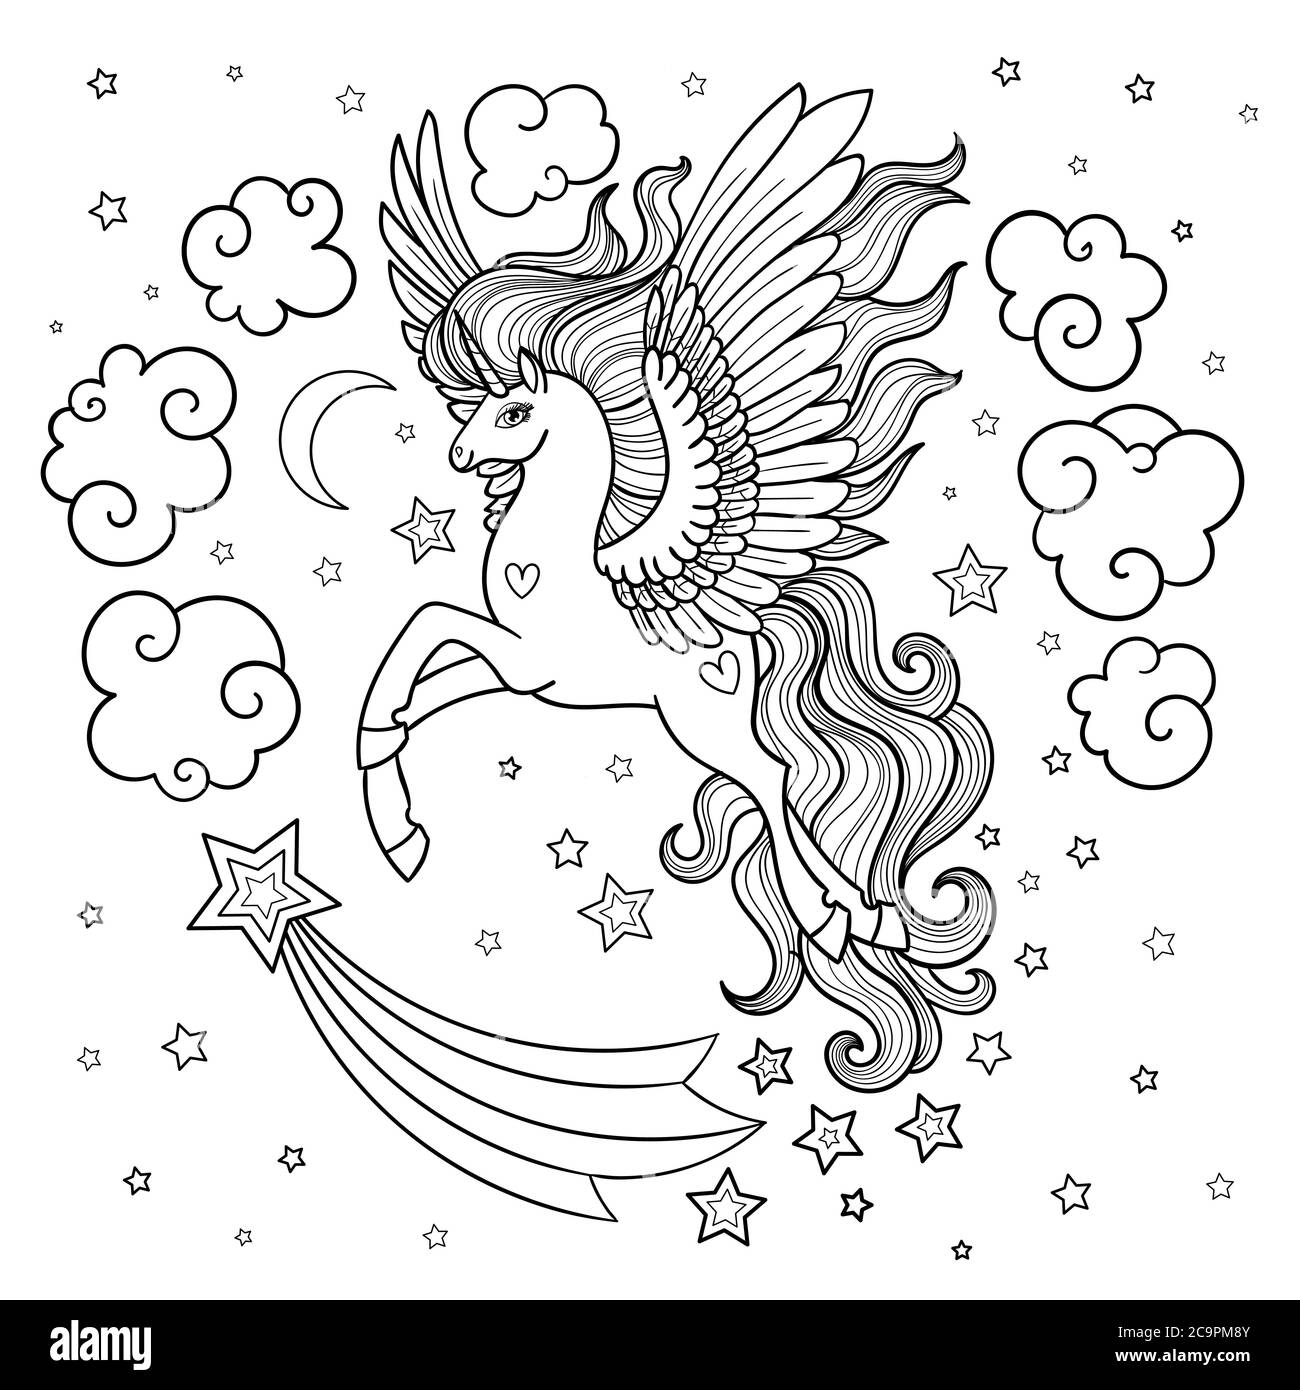 Jolie licorne de fées avec une longue minière. Noir et blanc. Animal fantastique. Pour la conception de livres à colorier, imprimés, affiches, tatouages, etc. Vecteur Illustration de Vecteur